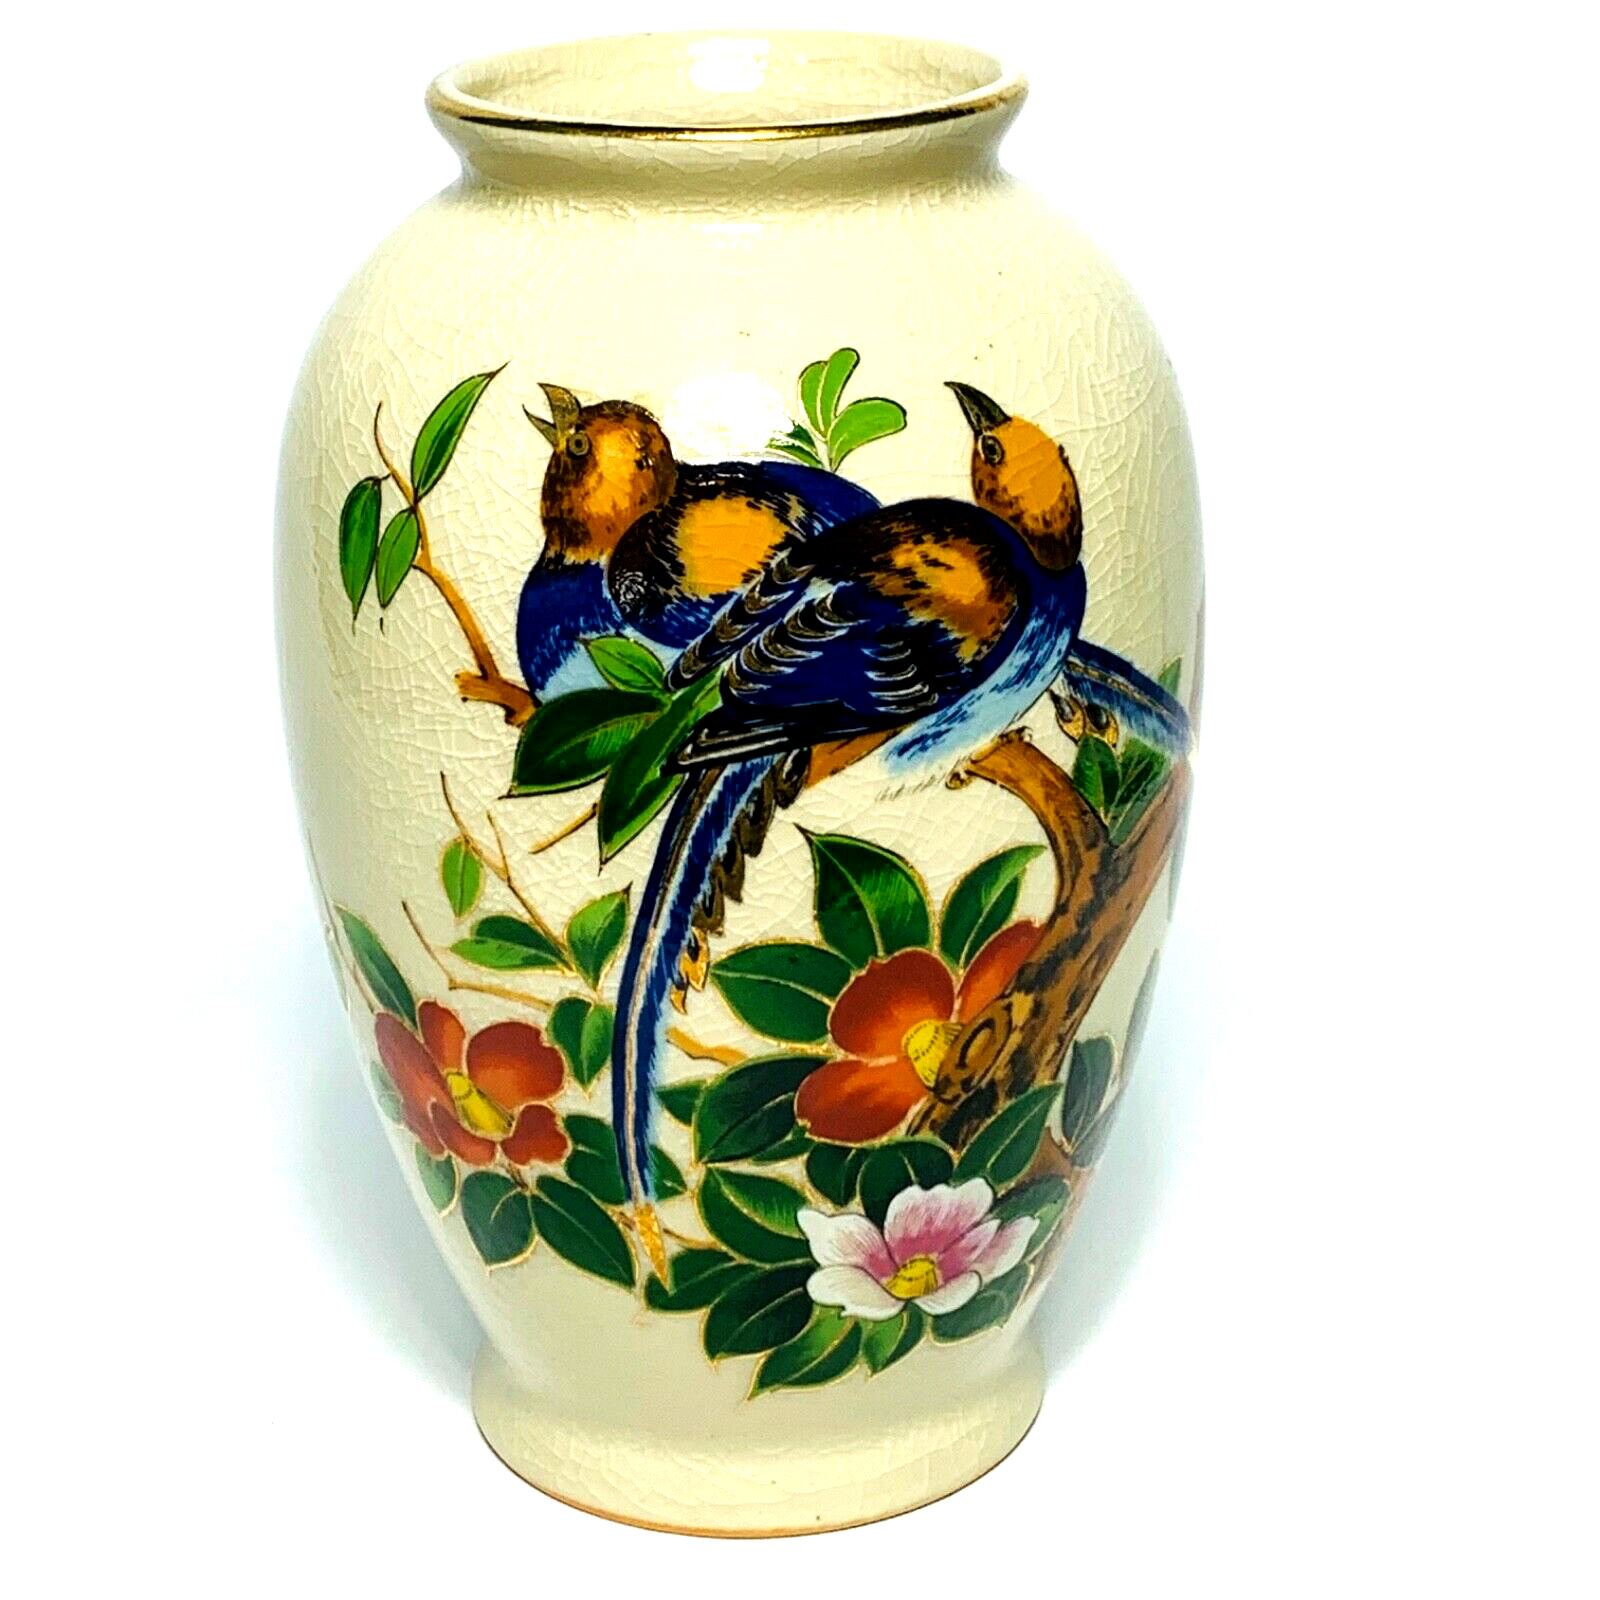 NAGOYA PORCELAIN VASE Japanese Oriental Bird Parrot Floral Hand-painted Vintage